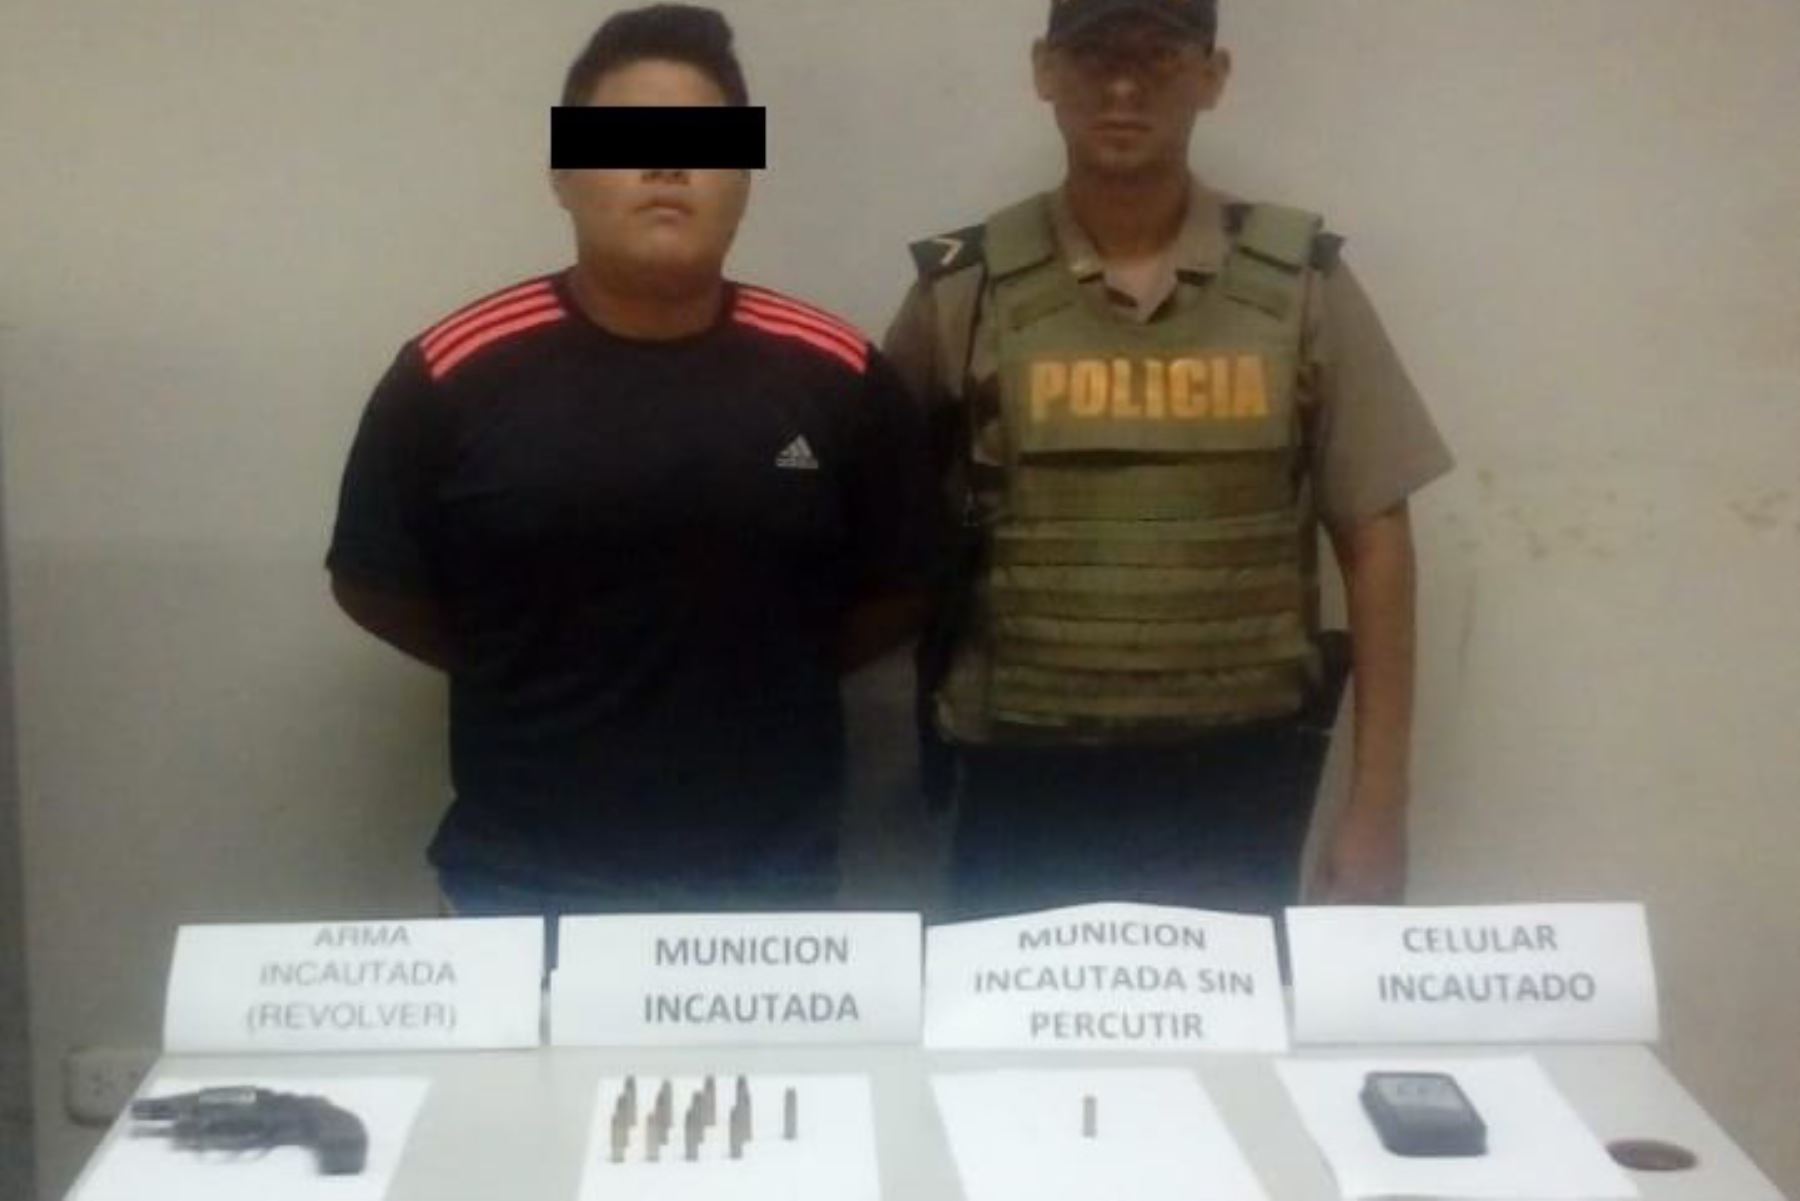 El menor de edad identificado con las iniciales J.M.P., hijo del alcalde deFoto:  Ayabaca, Baldomero Marchena, es investigado por la fiscalía.